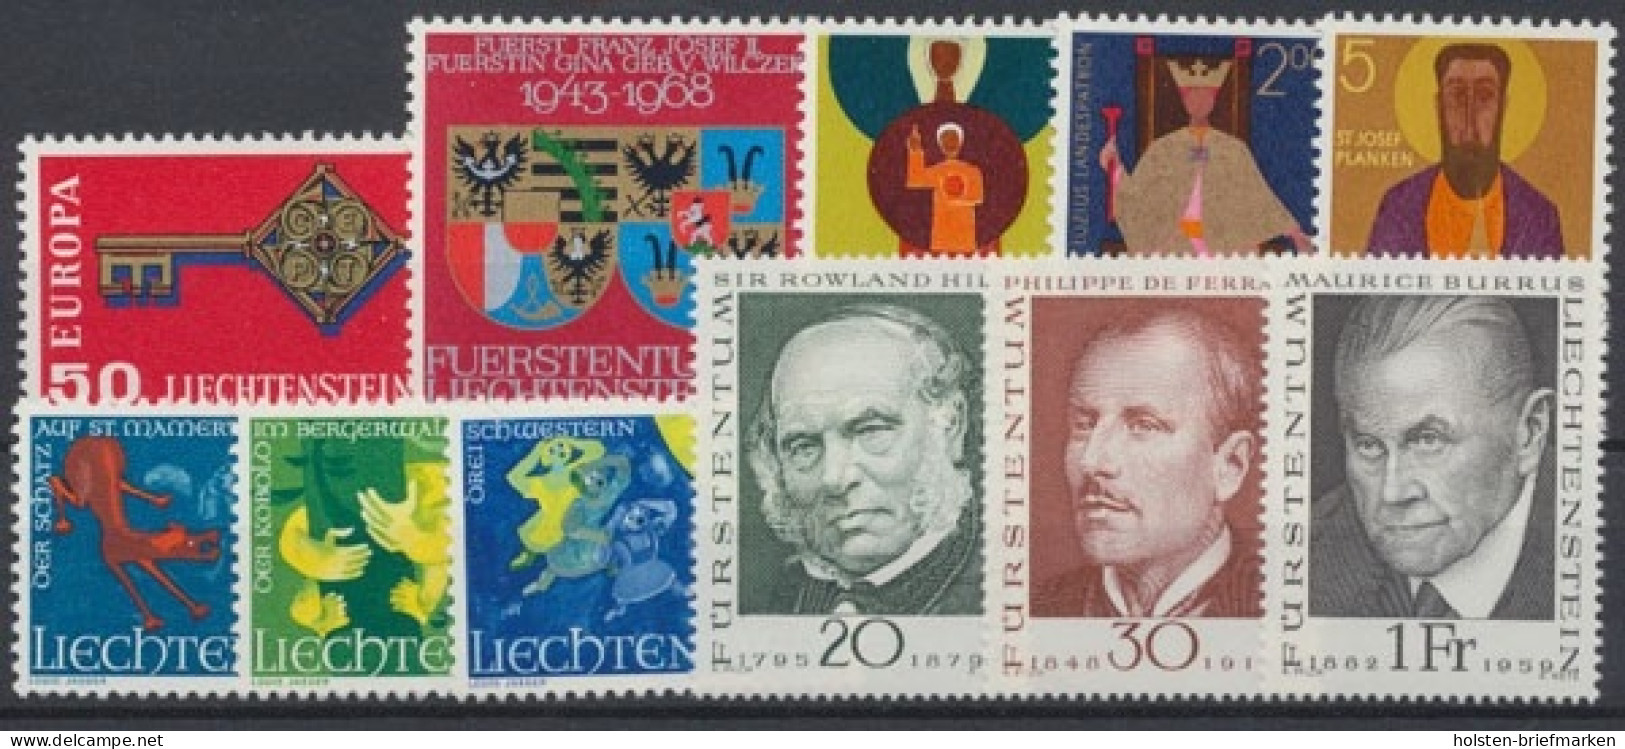 Liechtenstein, MiNr. 495-505, Jahrgang 1968, Postfrisch - Annate Complete